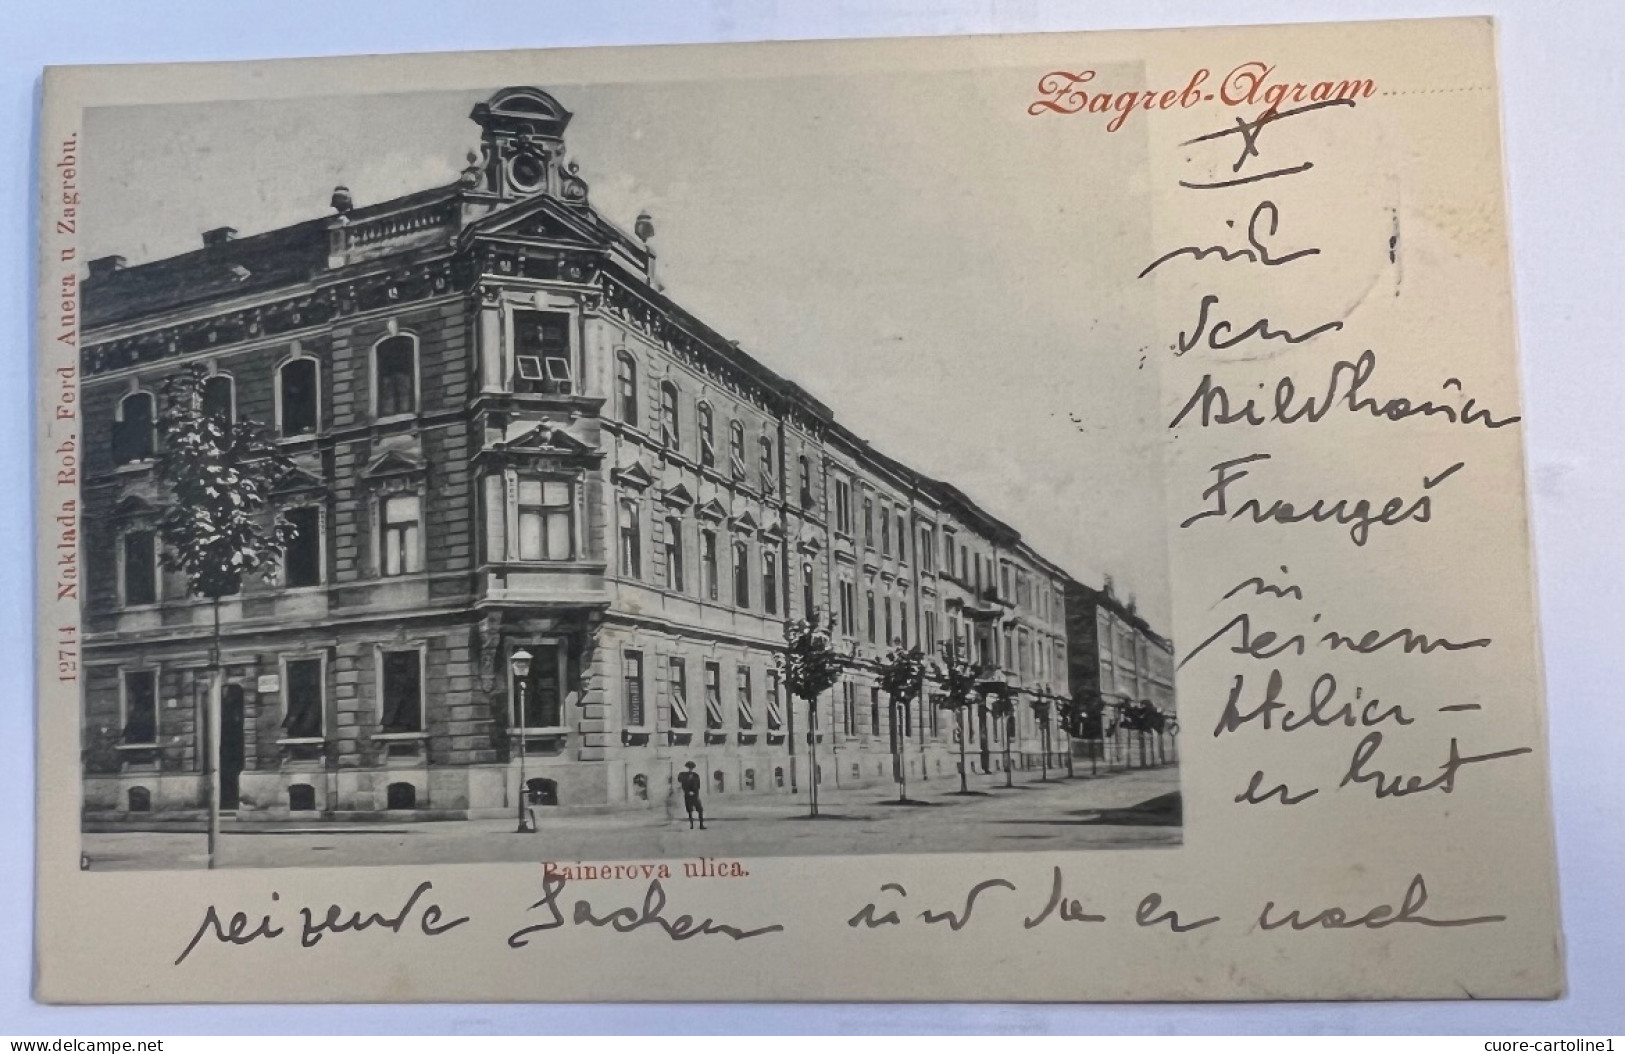 Zagreb - Agram - Vg 1899. - Croatia